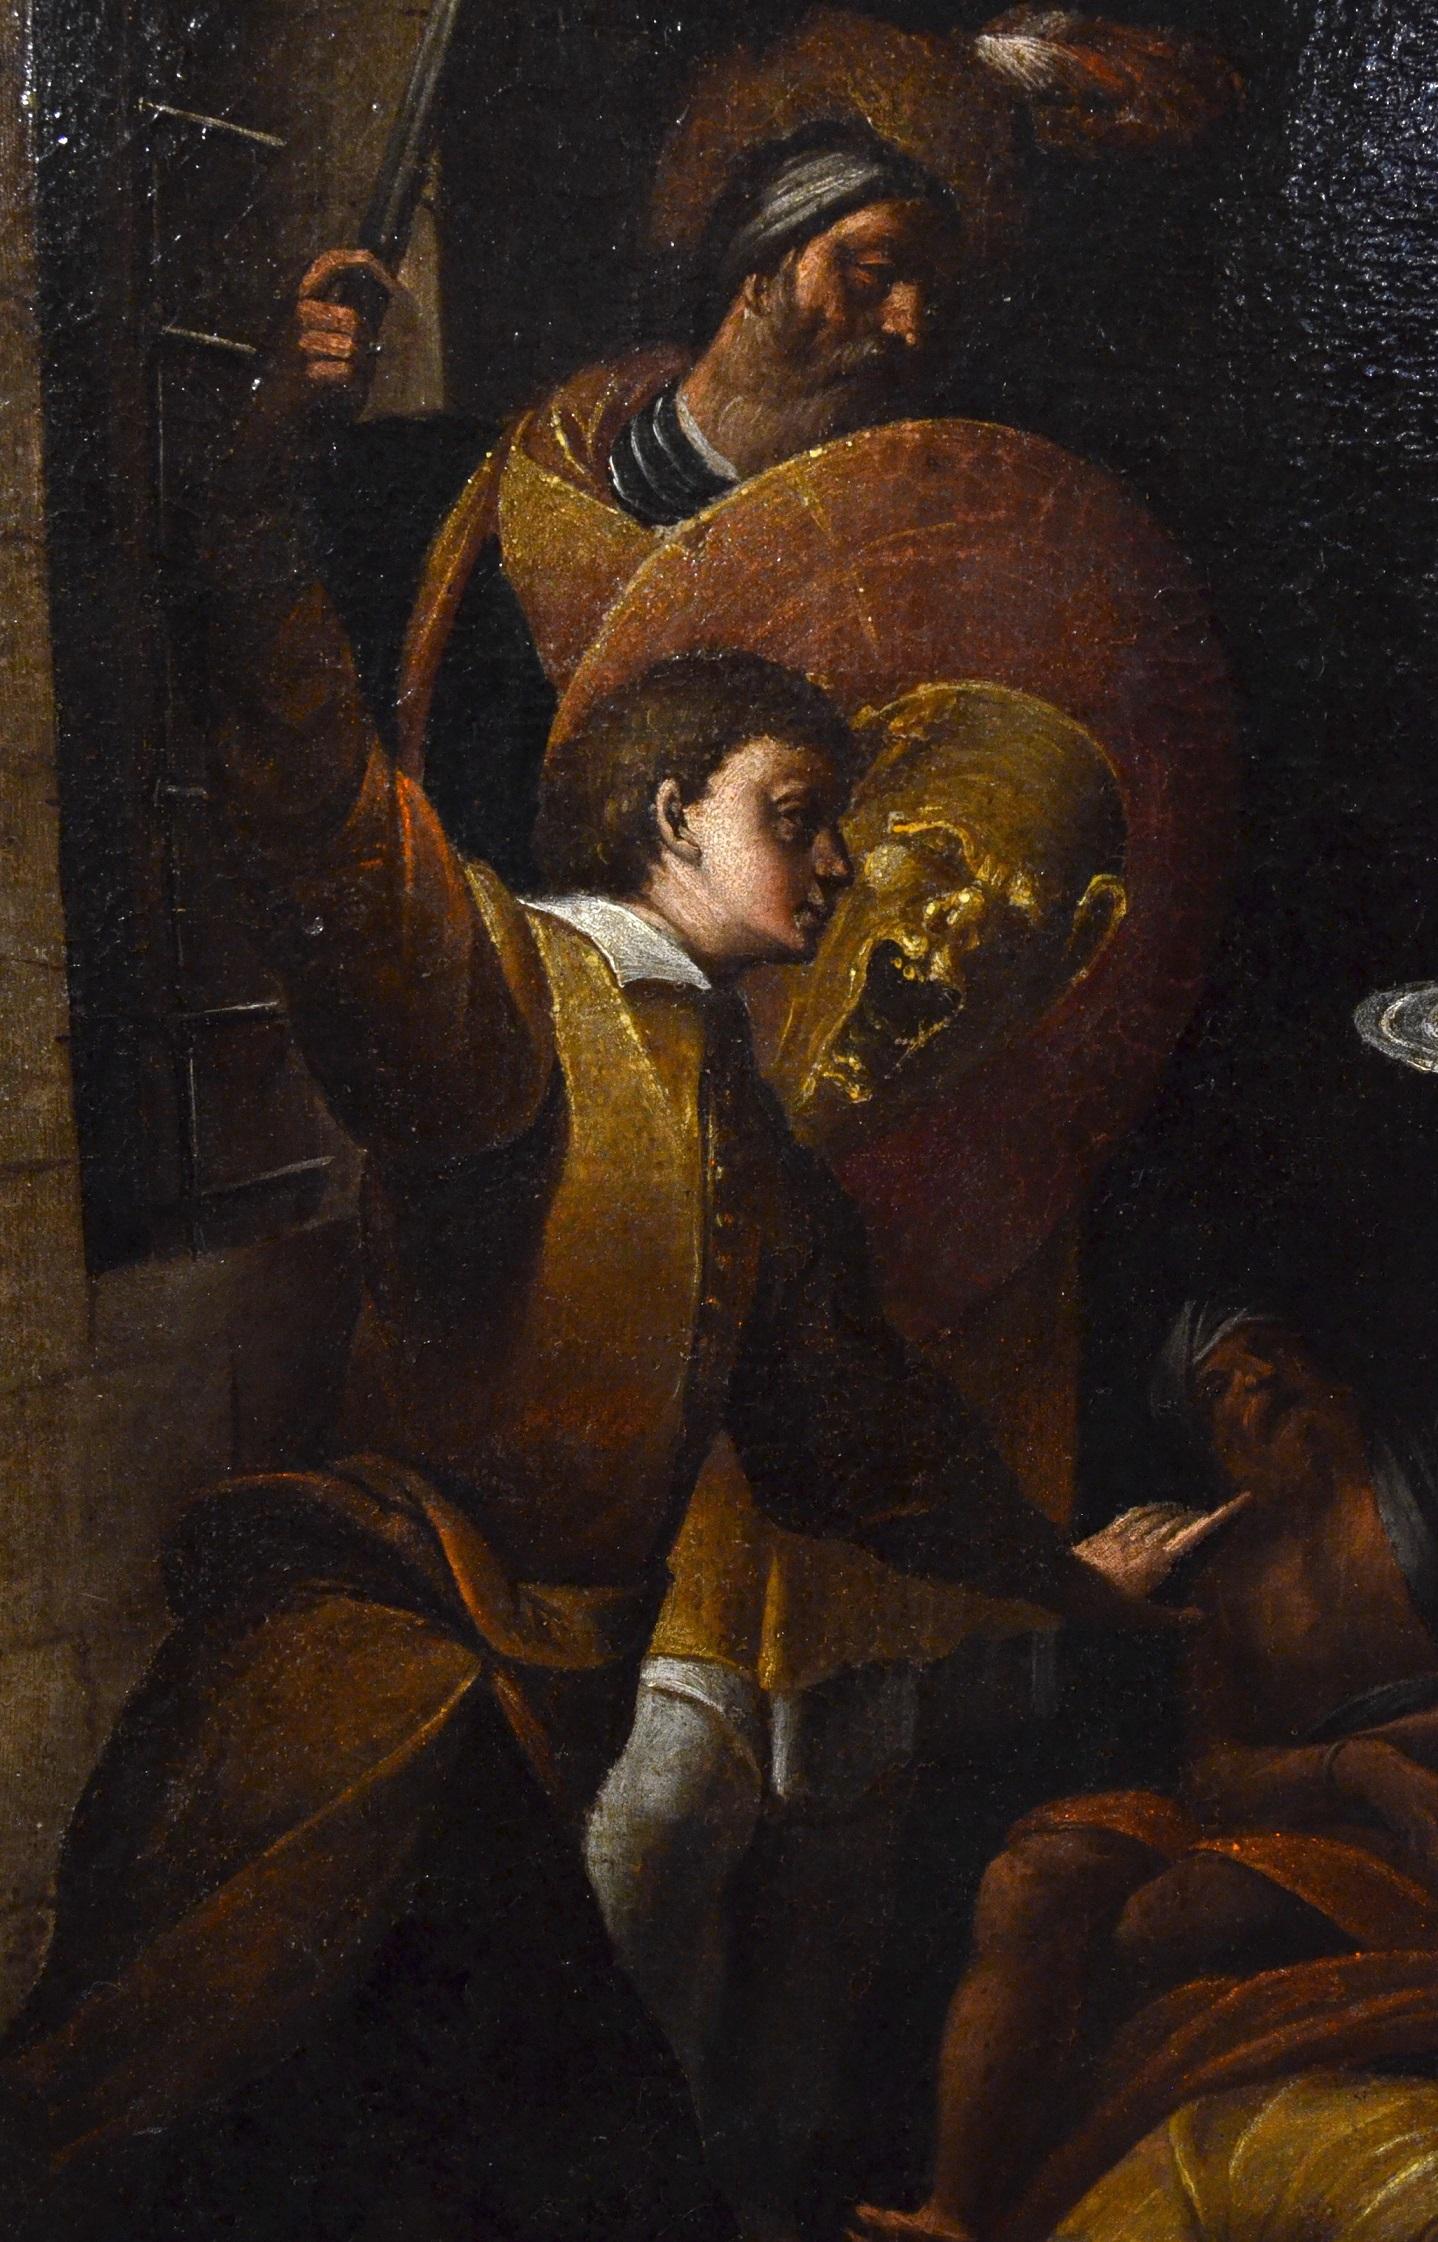 Saint John Baptist Morazzone Paint Oil on canvas Old master 17th Century Italy 3